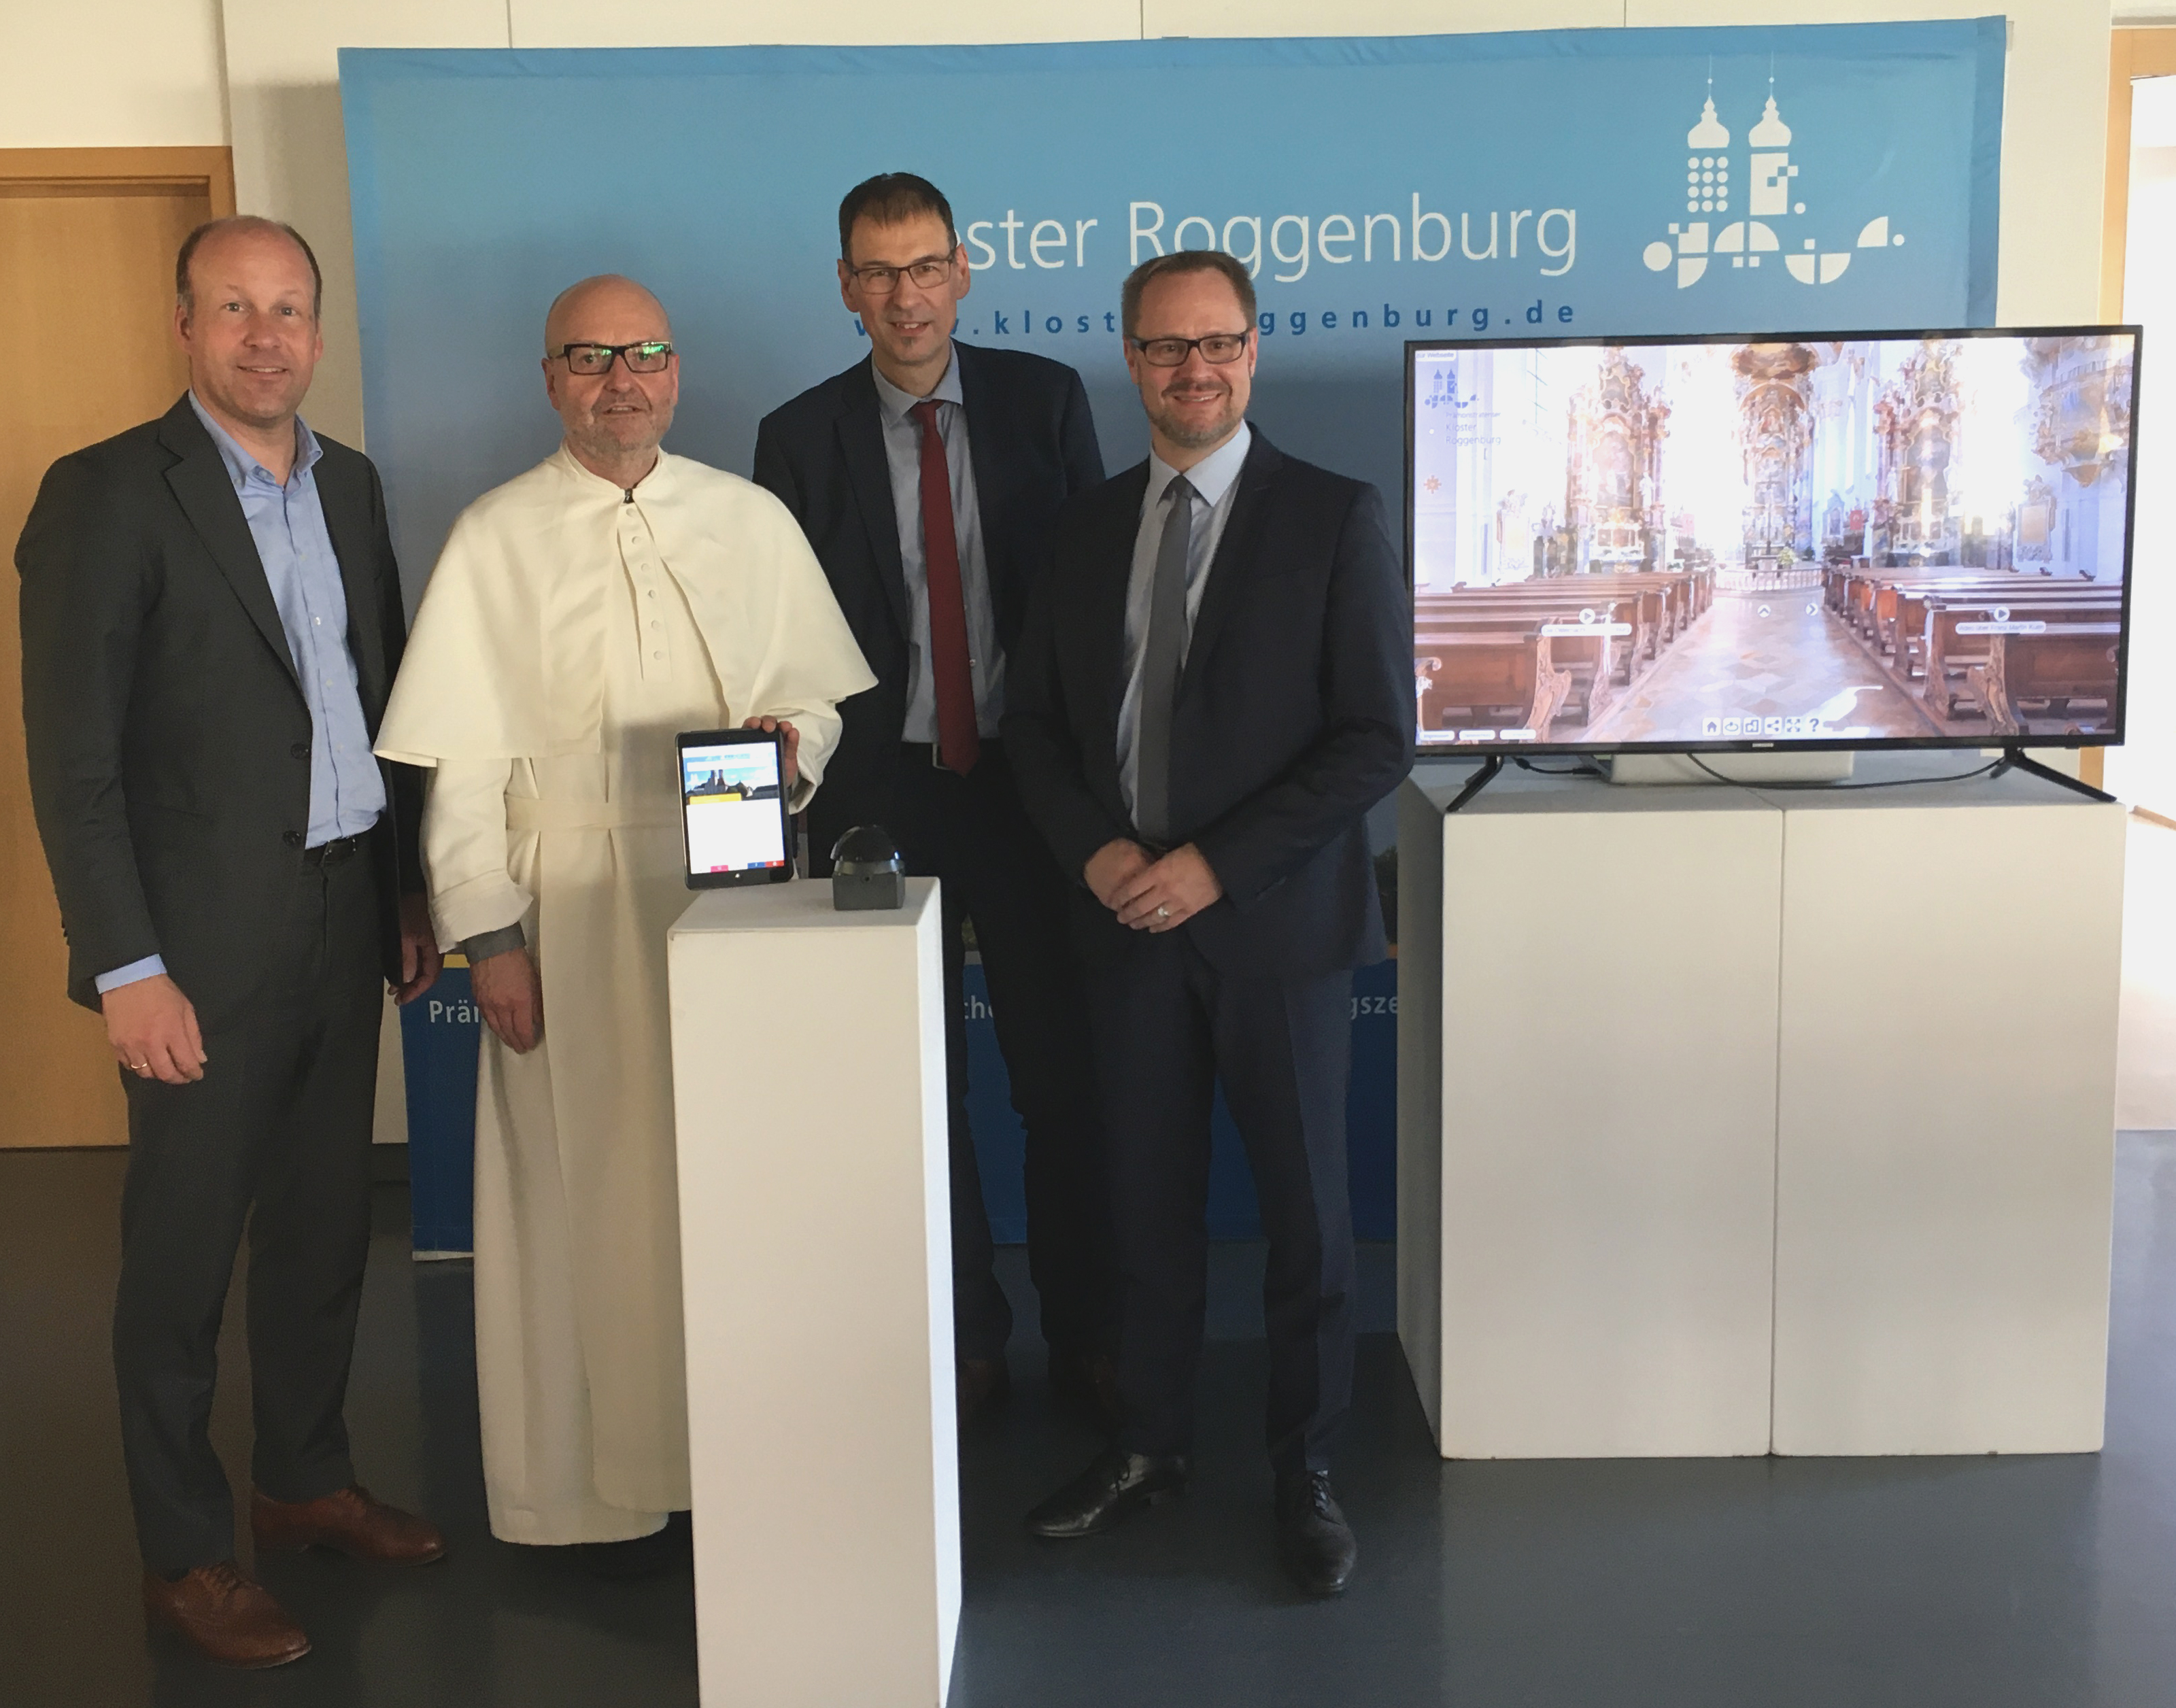 Neue 360 Grad -Tour durchs Kloster Roggenburg